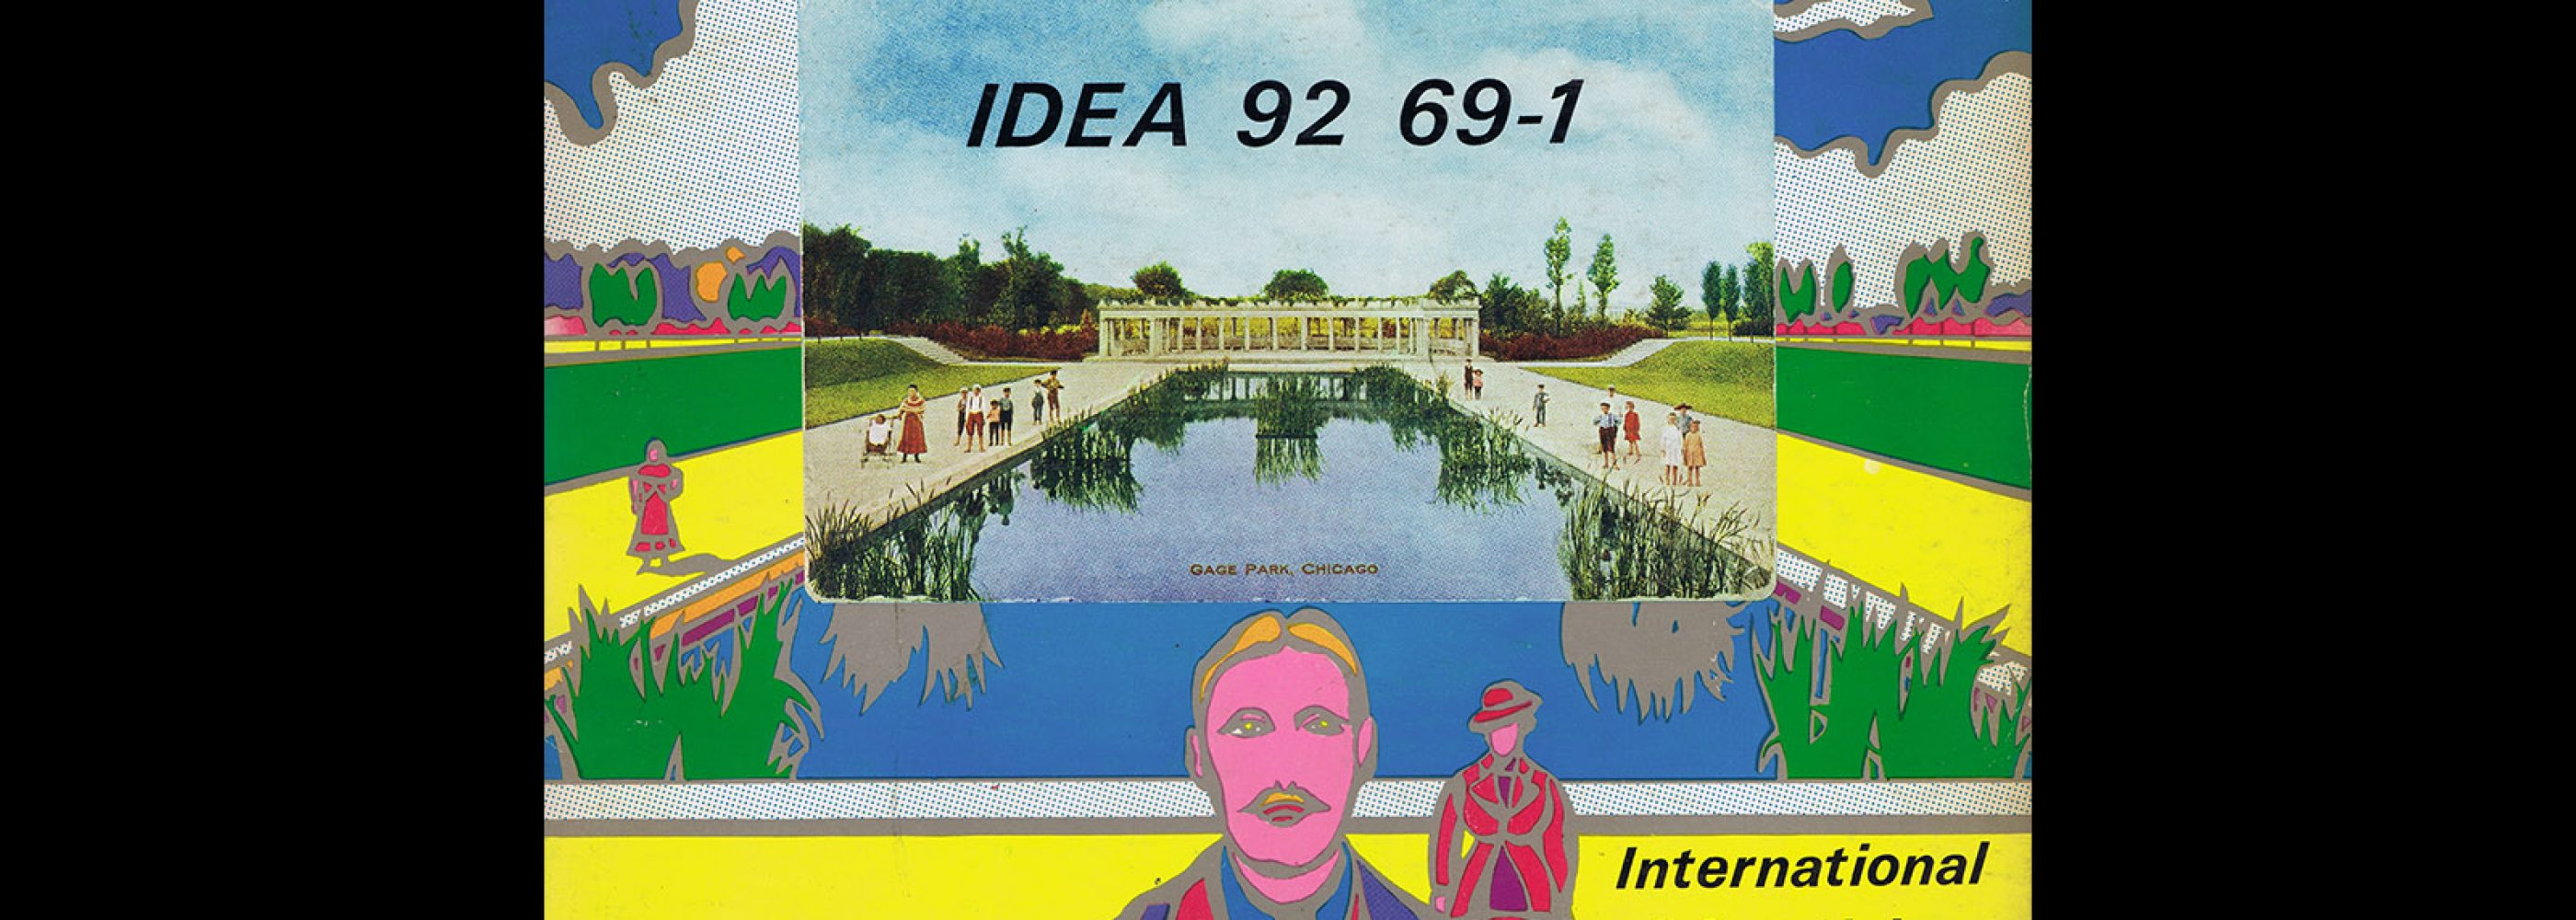 Idea 92, 1969-1. Cover design by Tadanori Yokoo